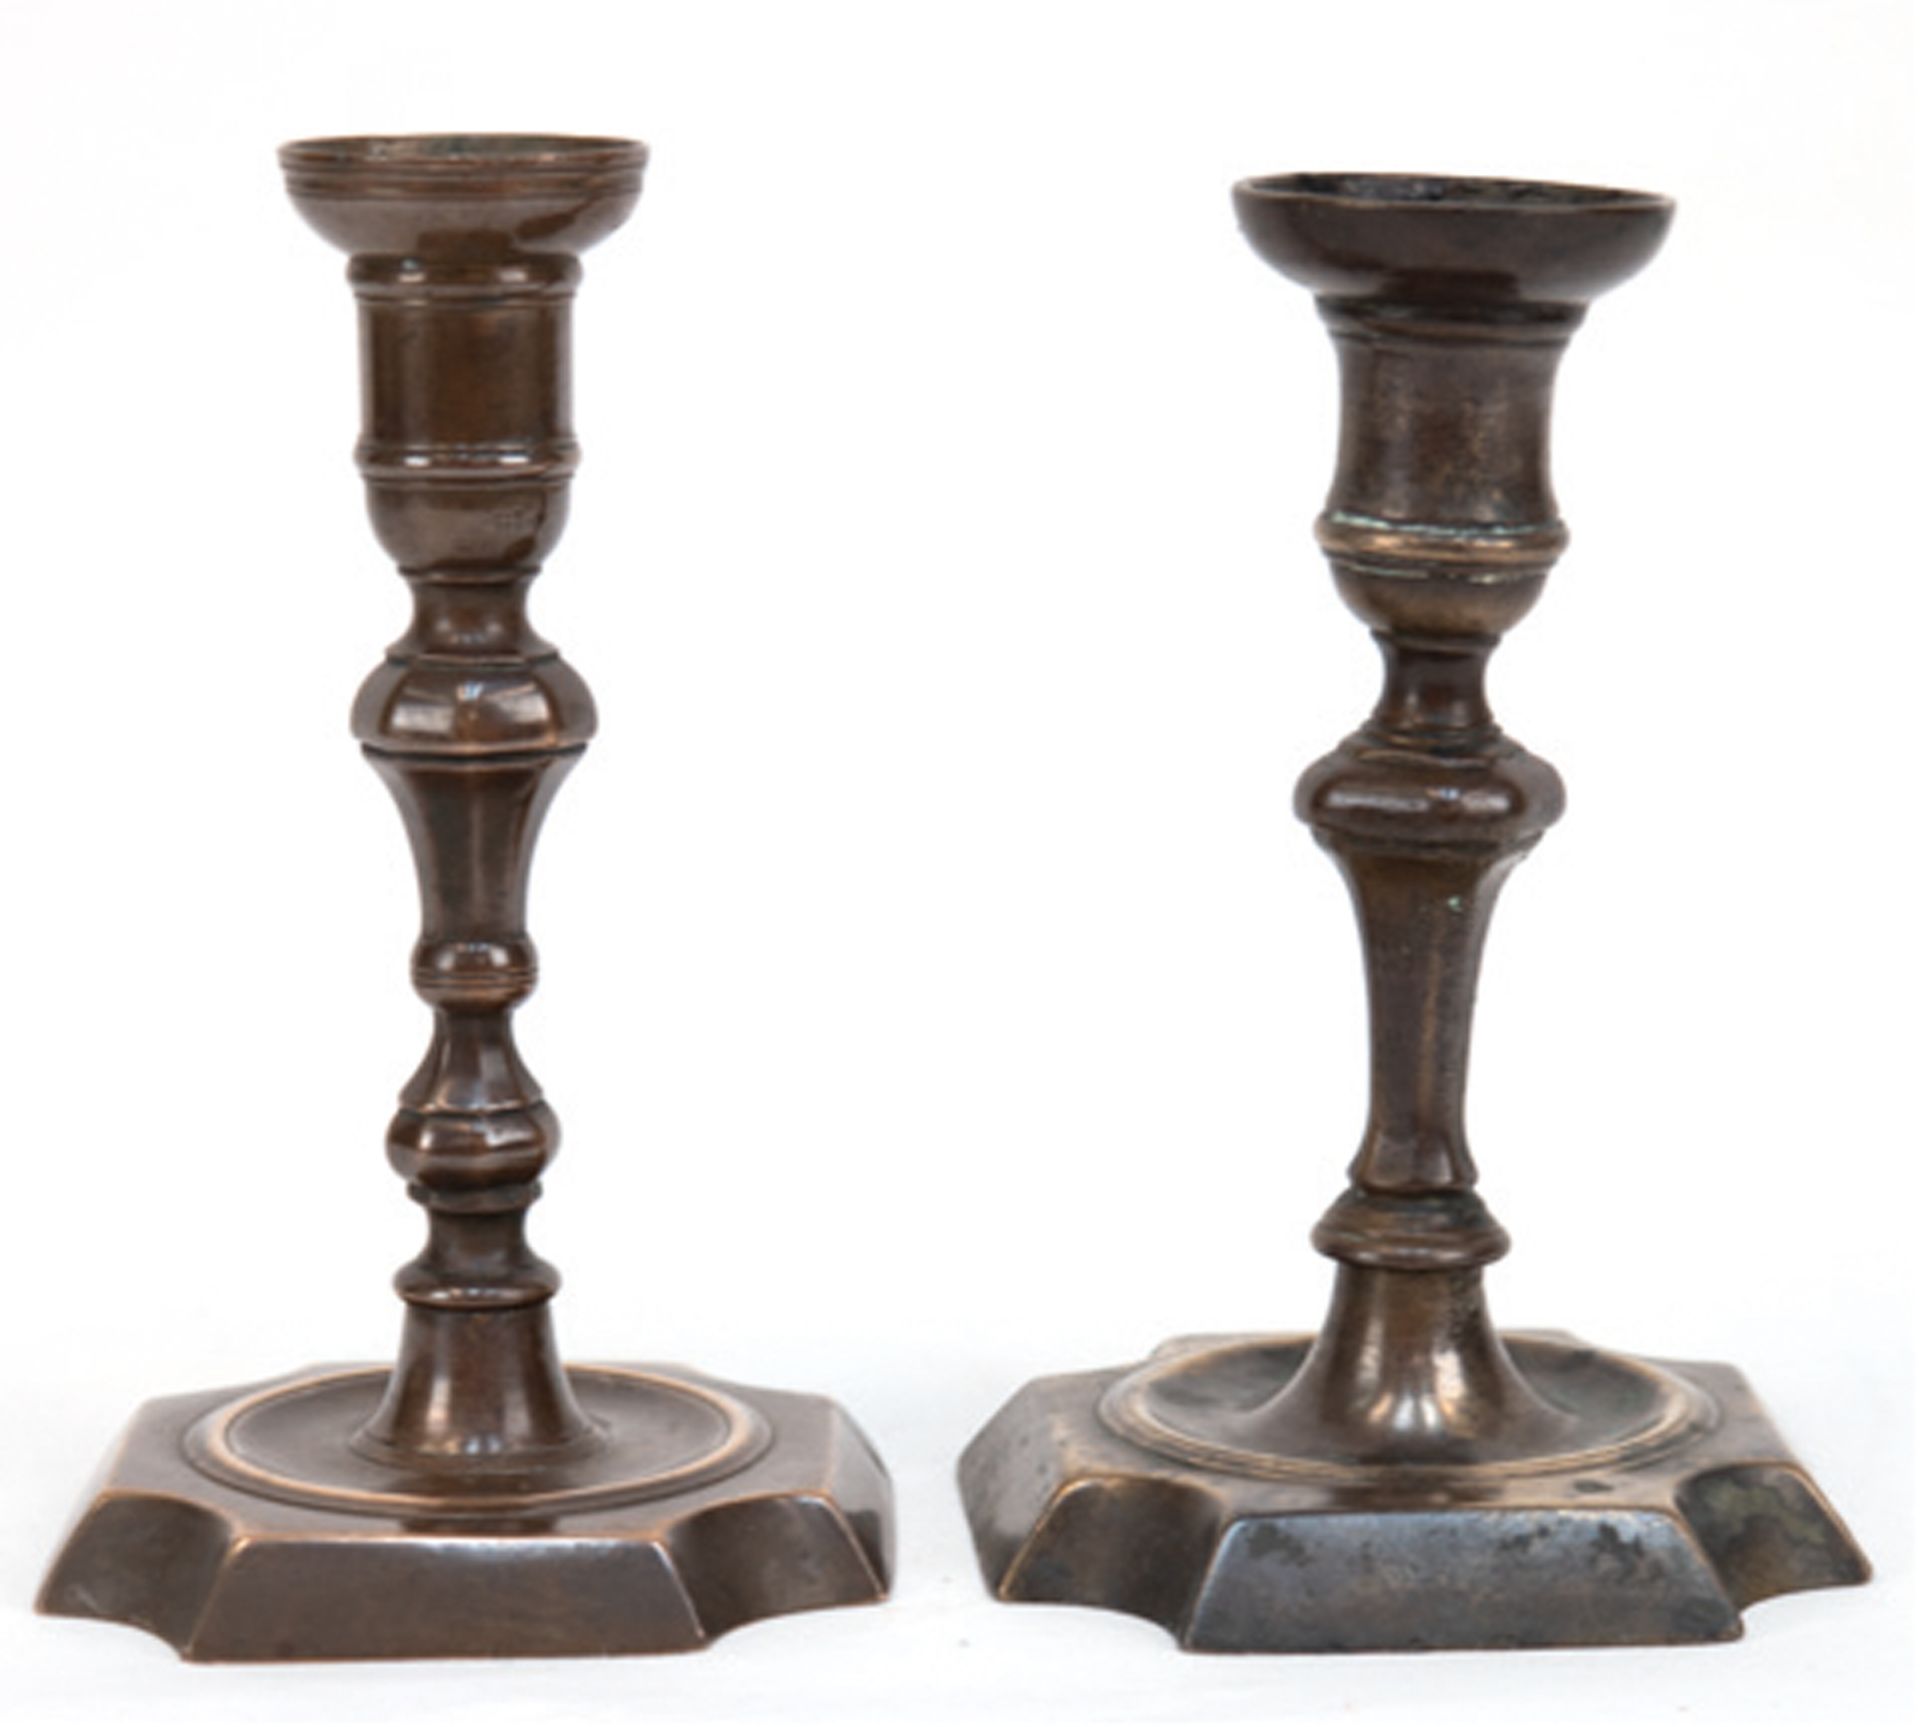 Paar Bronzeleuchter, 19. Jh., Fuß mit eingezogenen Ecken, geschraubter, gegliederter Schaft in Tüll